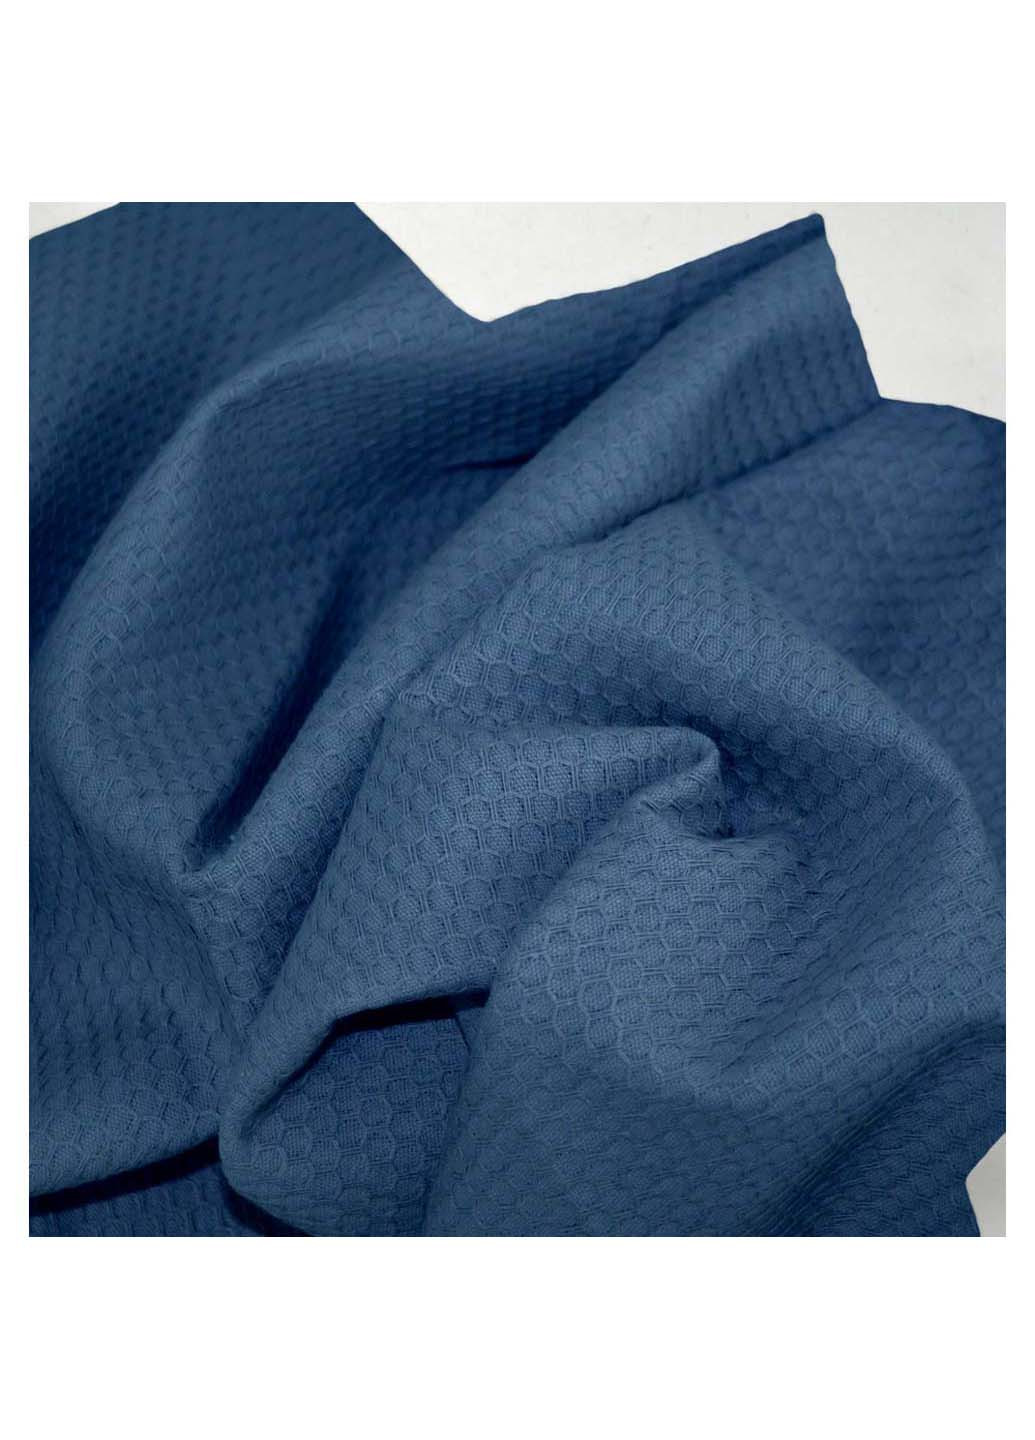 Cosas полотенце однотонный синий производство -